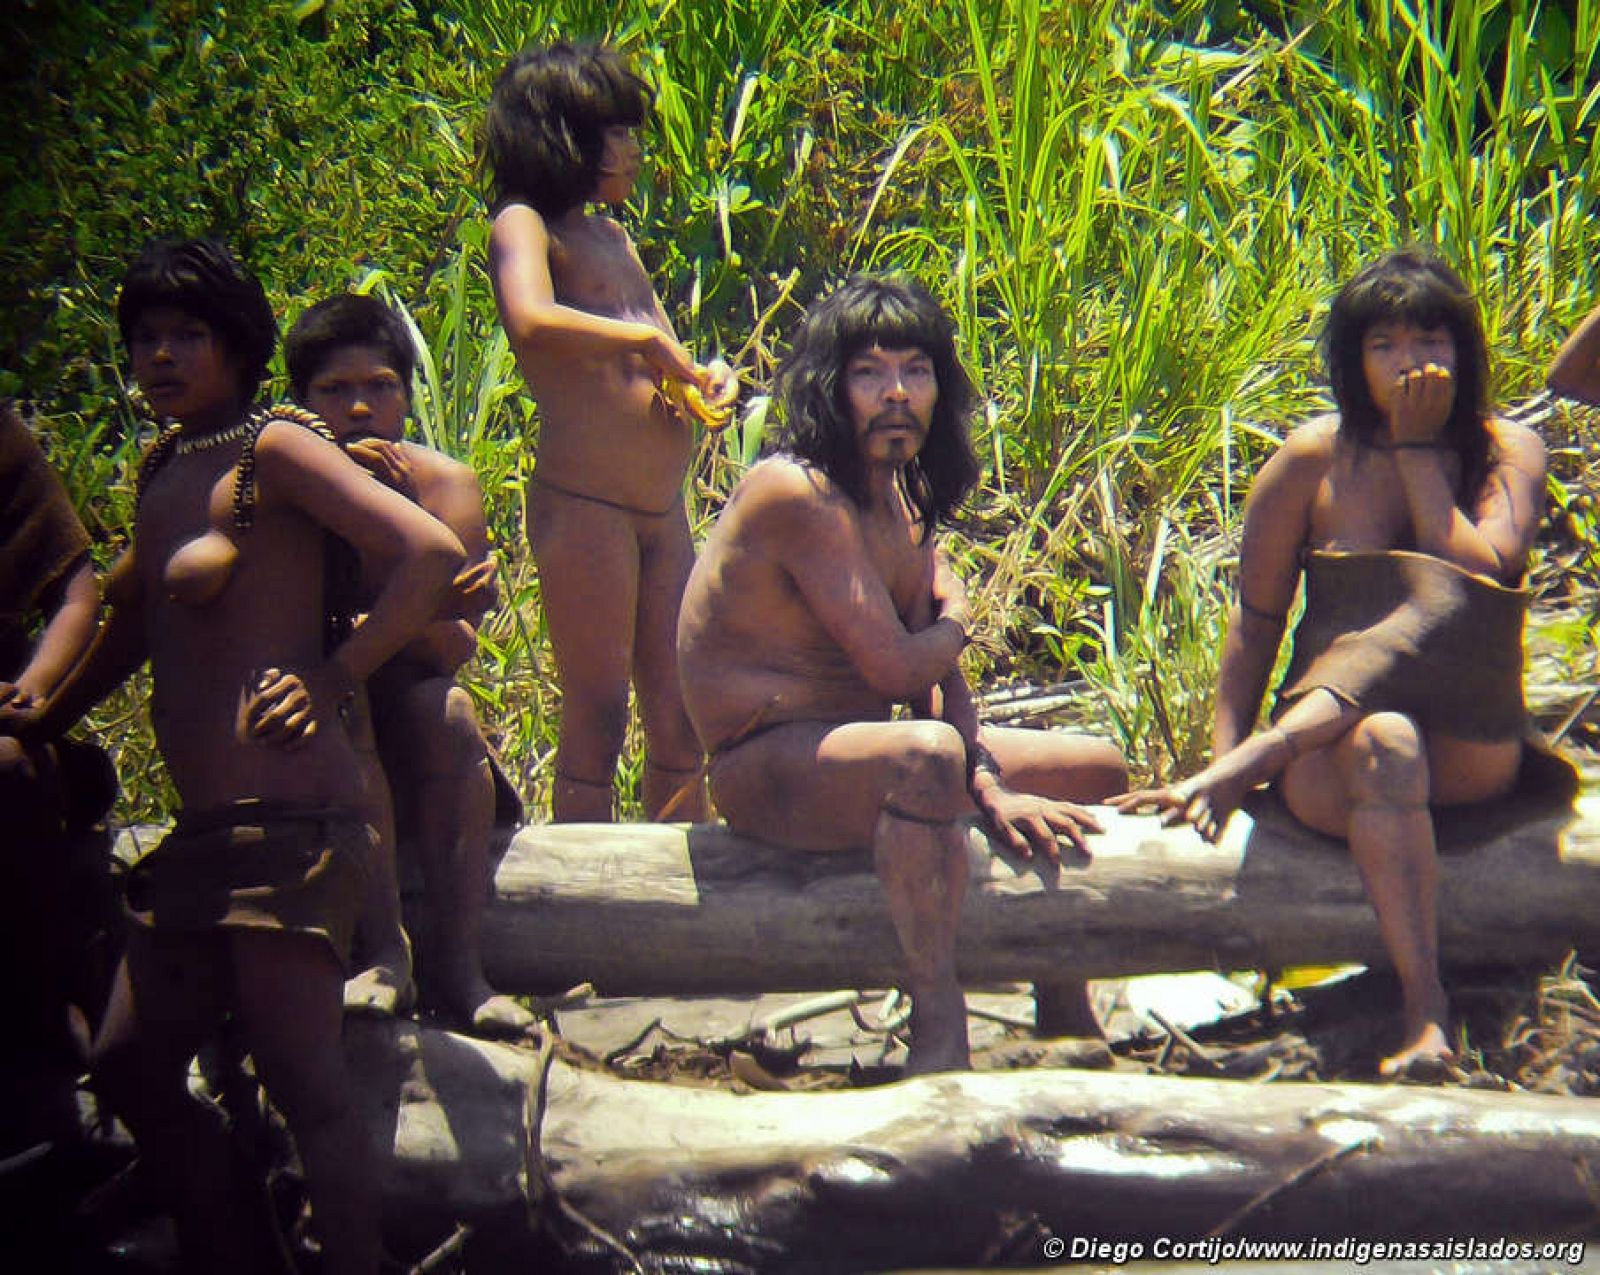 La ONG señala que son las imágenes "más detalladas" que jamás se han obtenido de una tribu no contactada